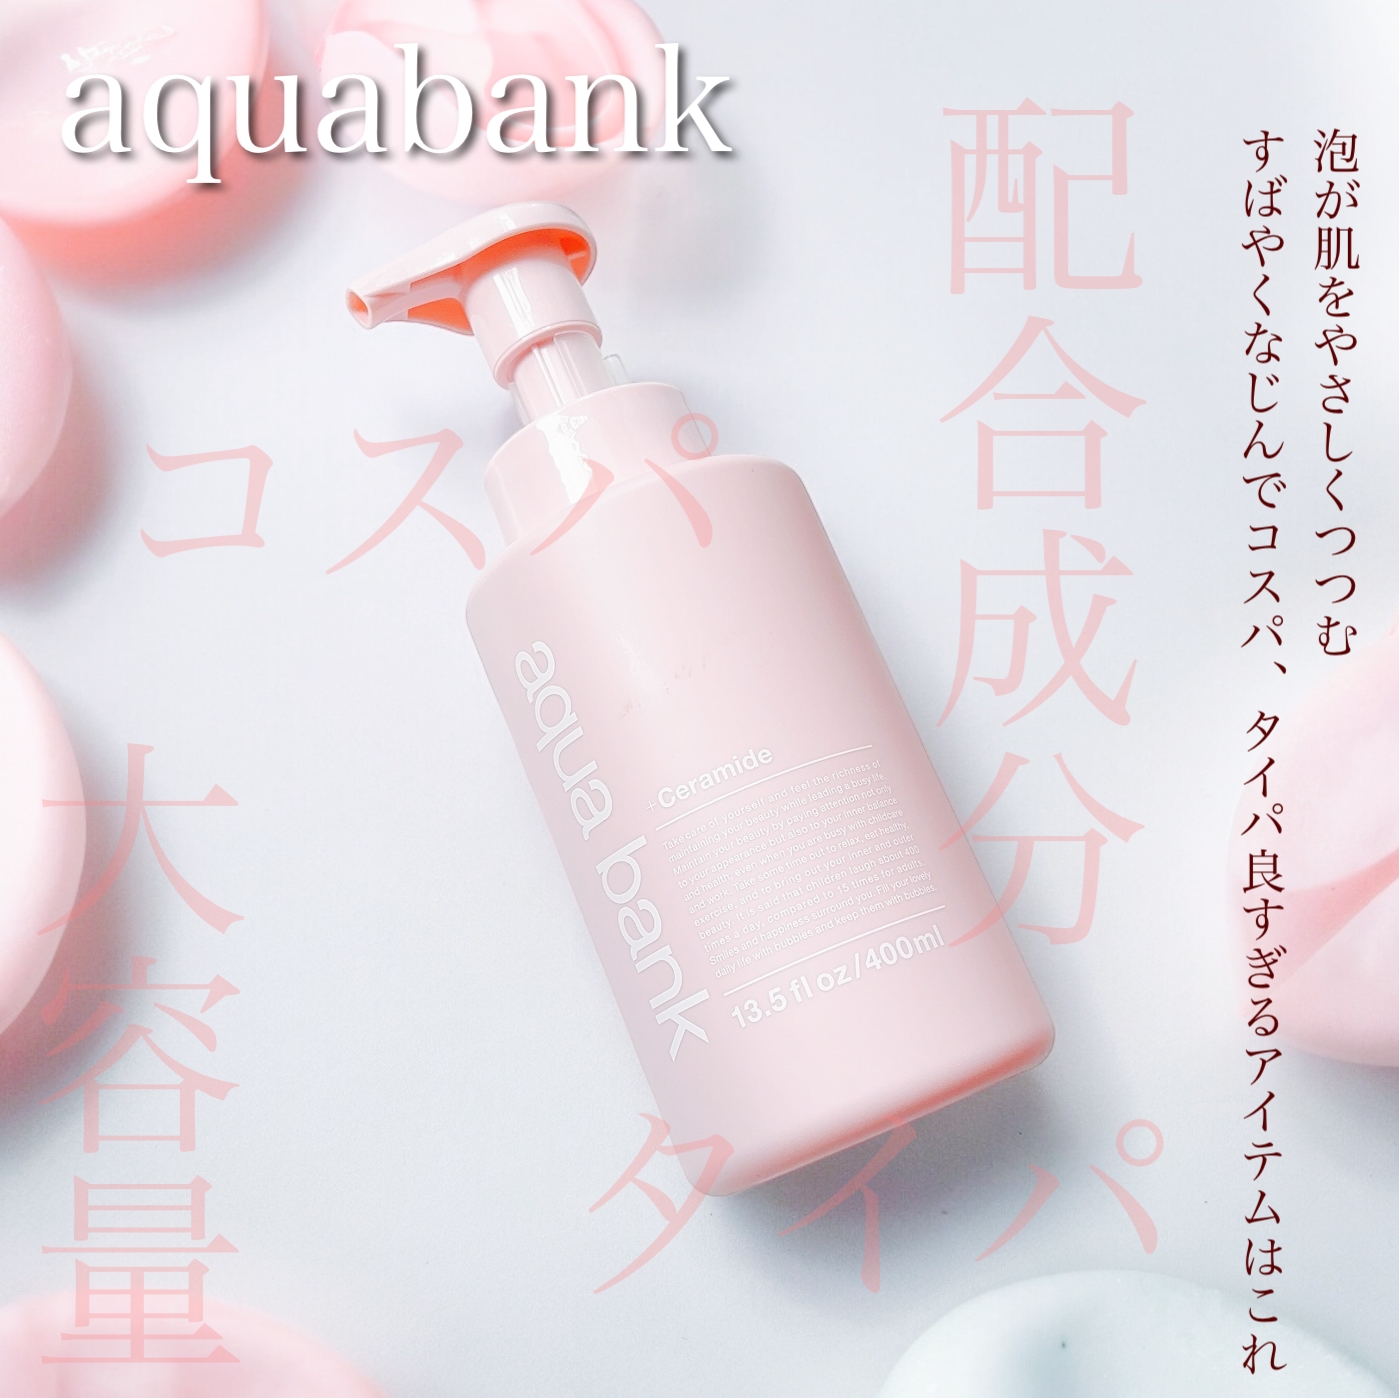 aqua bank(アクアバンク) クリアセラミドバブルローションの良い点・メリットに関するふっきーさんの口コミ画像1